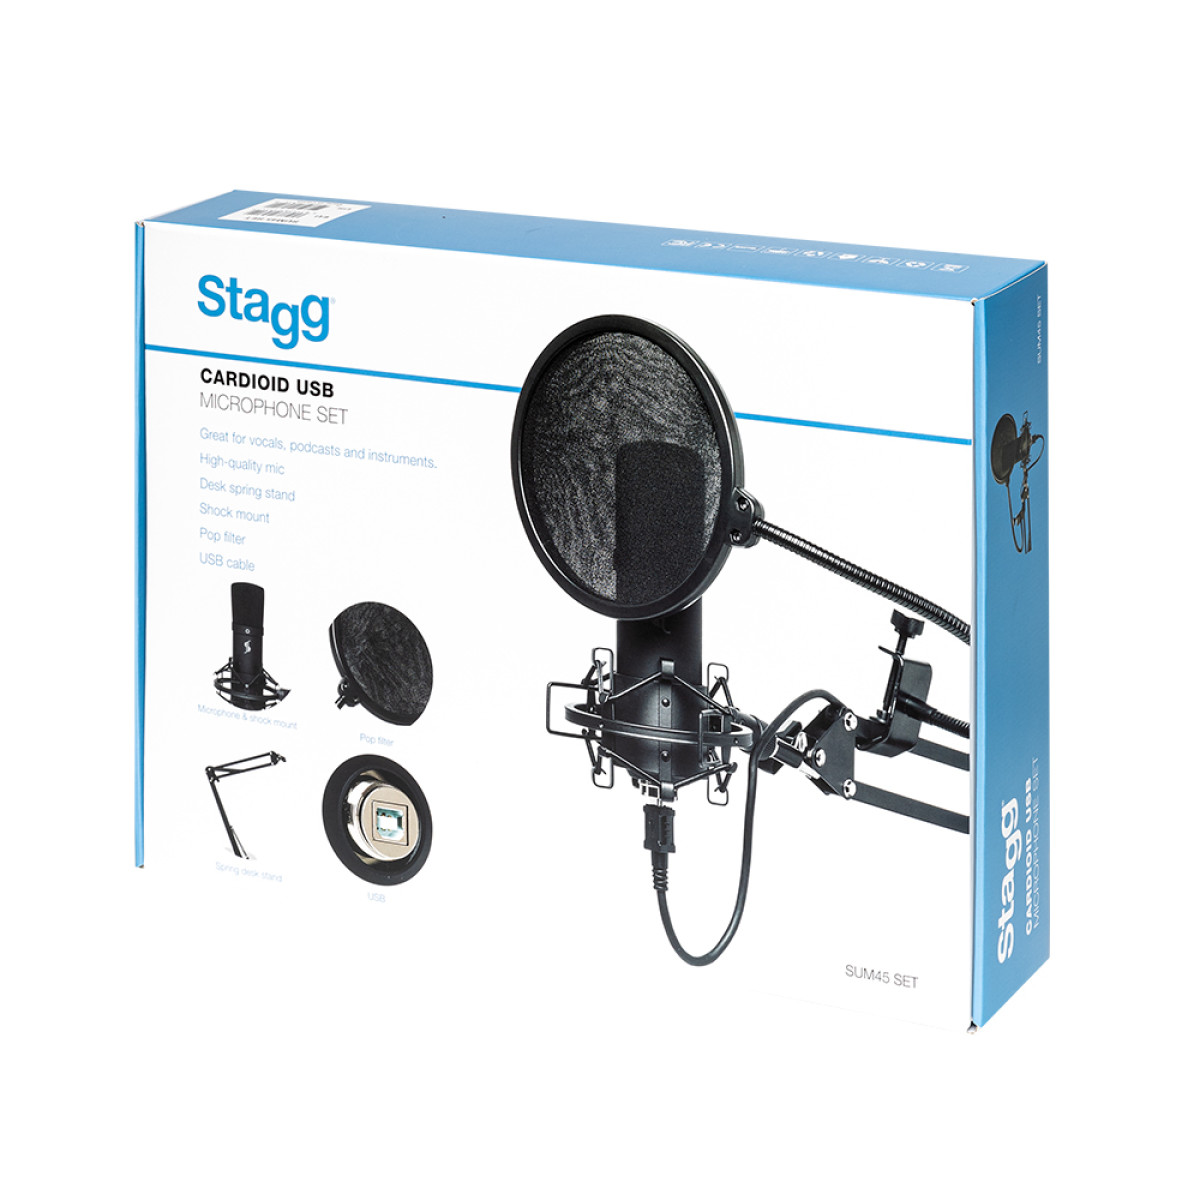 Stagg SUM45 SET USB Kondenser Mikrofon komplett Set